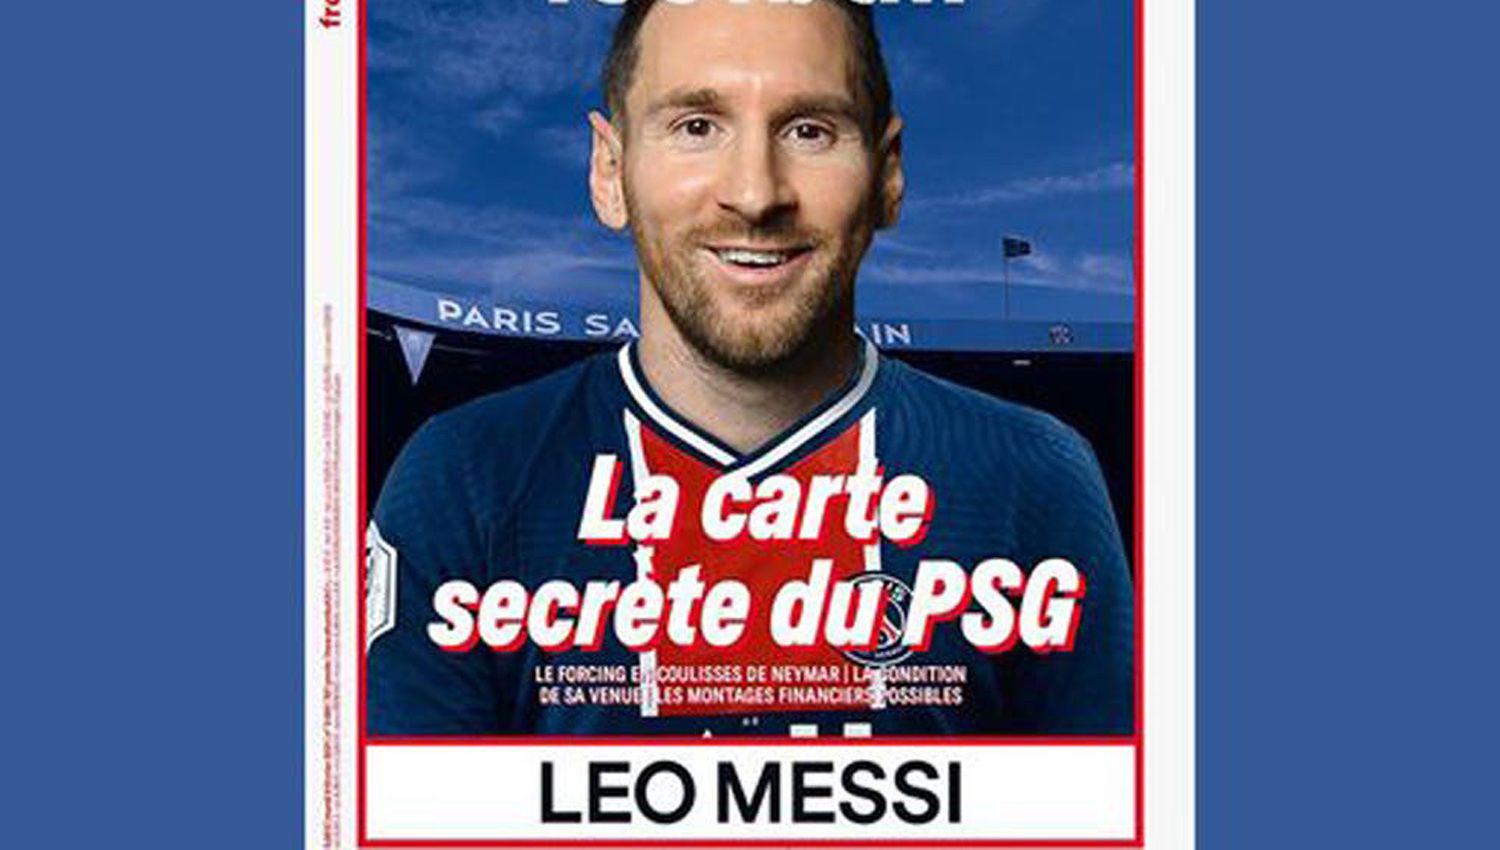 Ineacutedita imagen de Lionel Messi con la camiseta del Paris Saint Germain